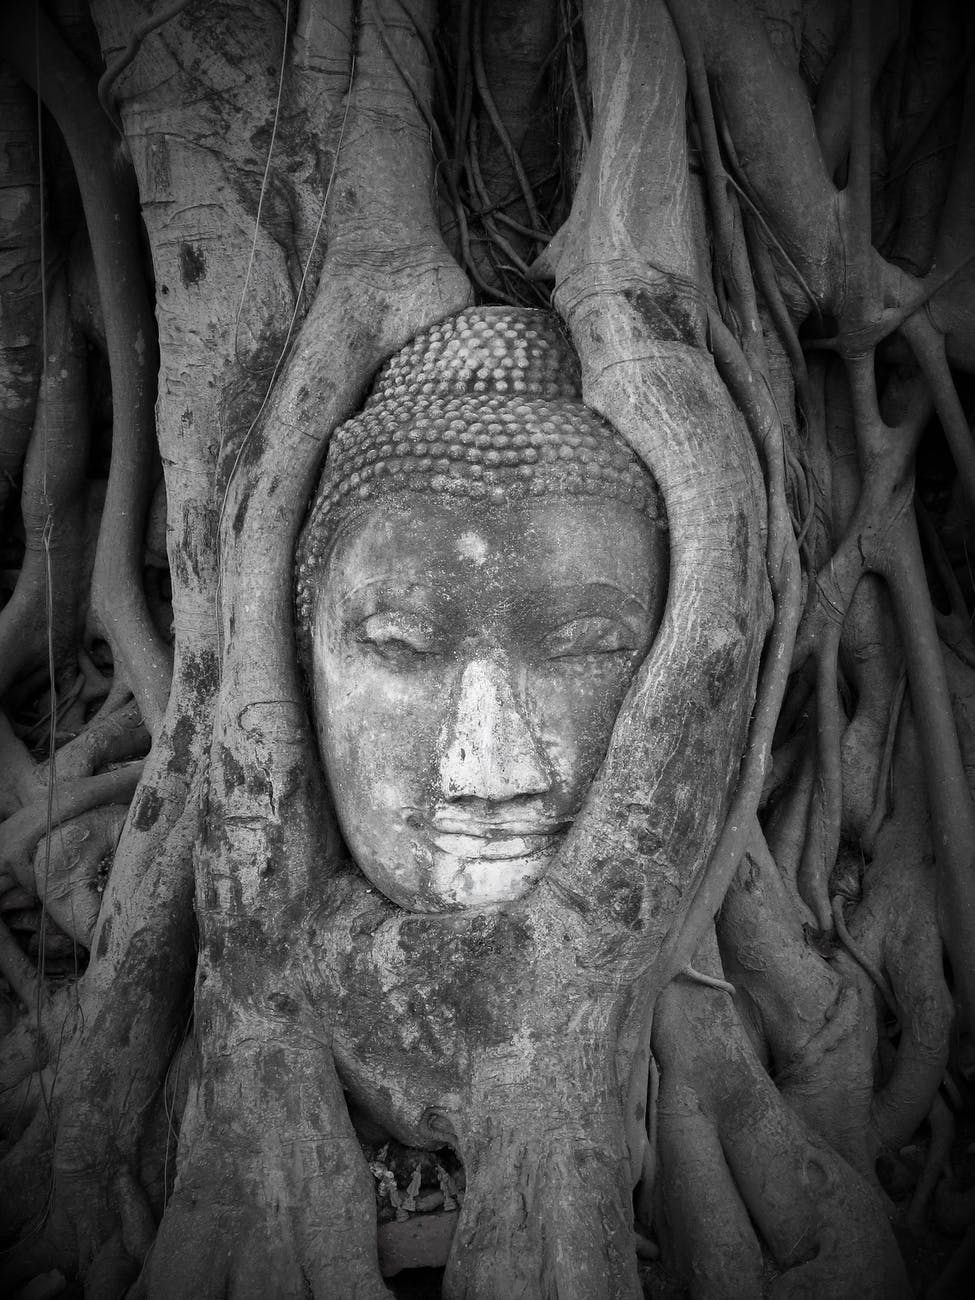 grayscale photo of buddha statue